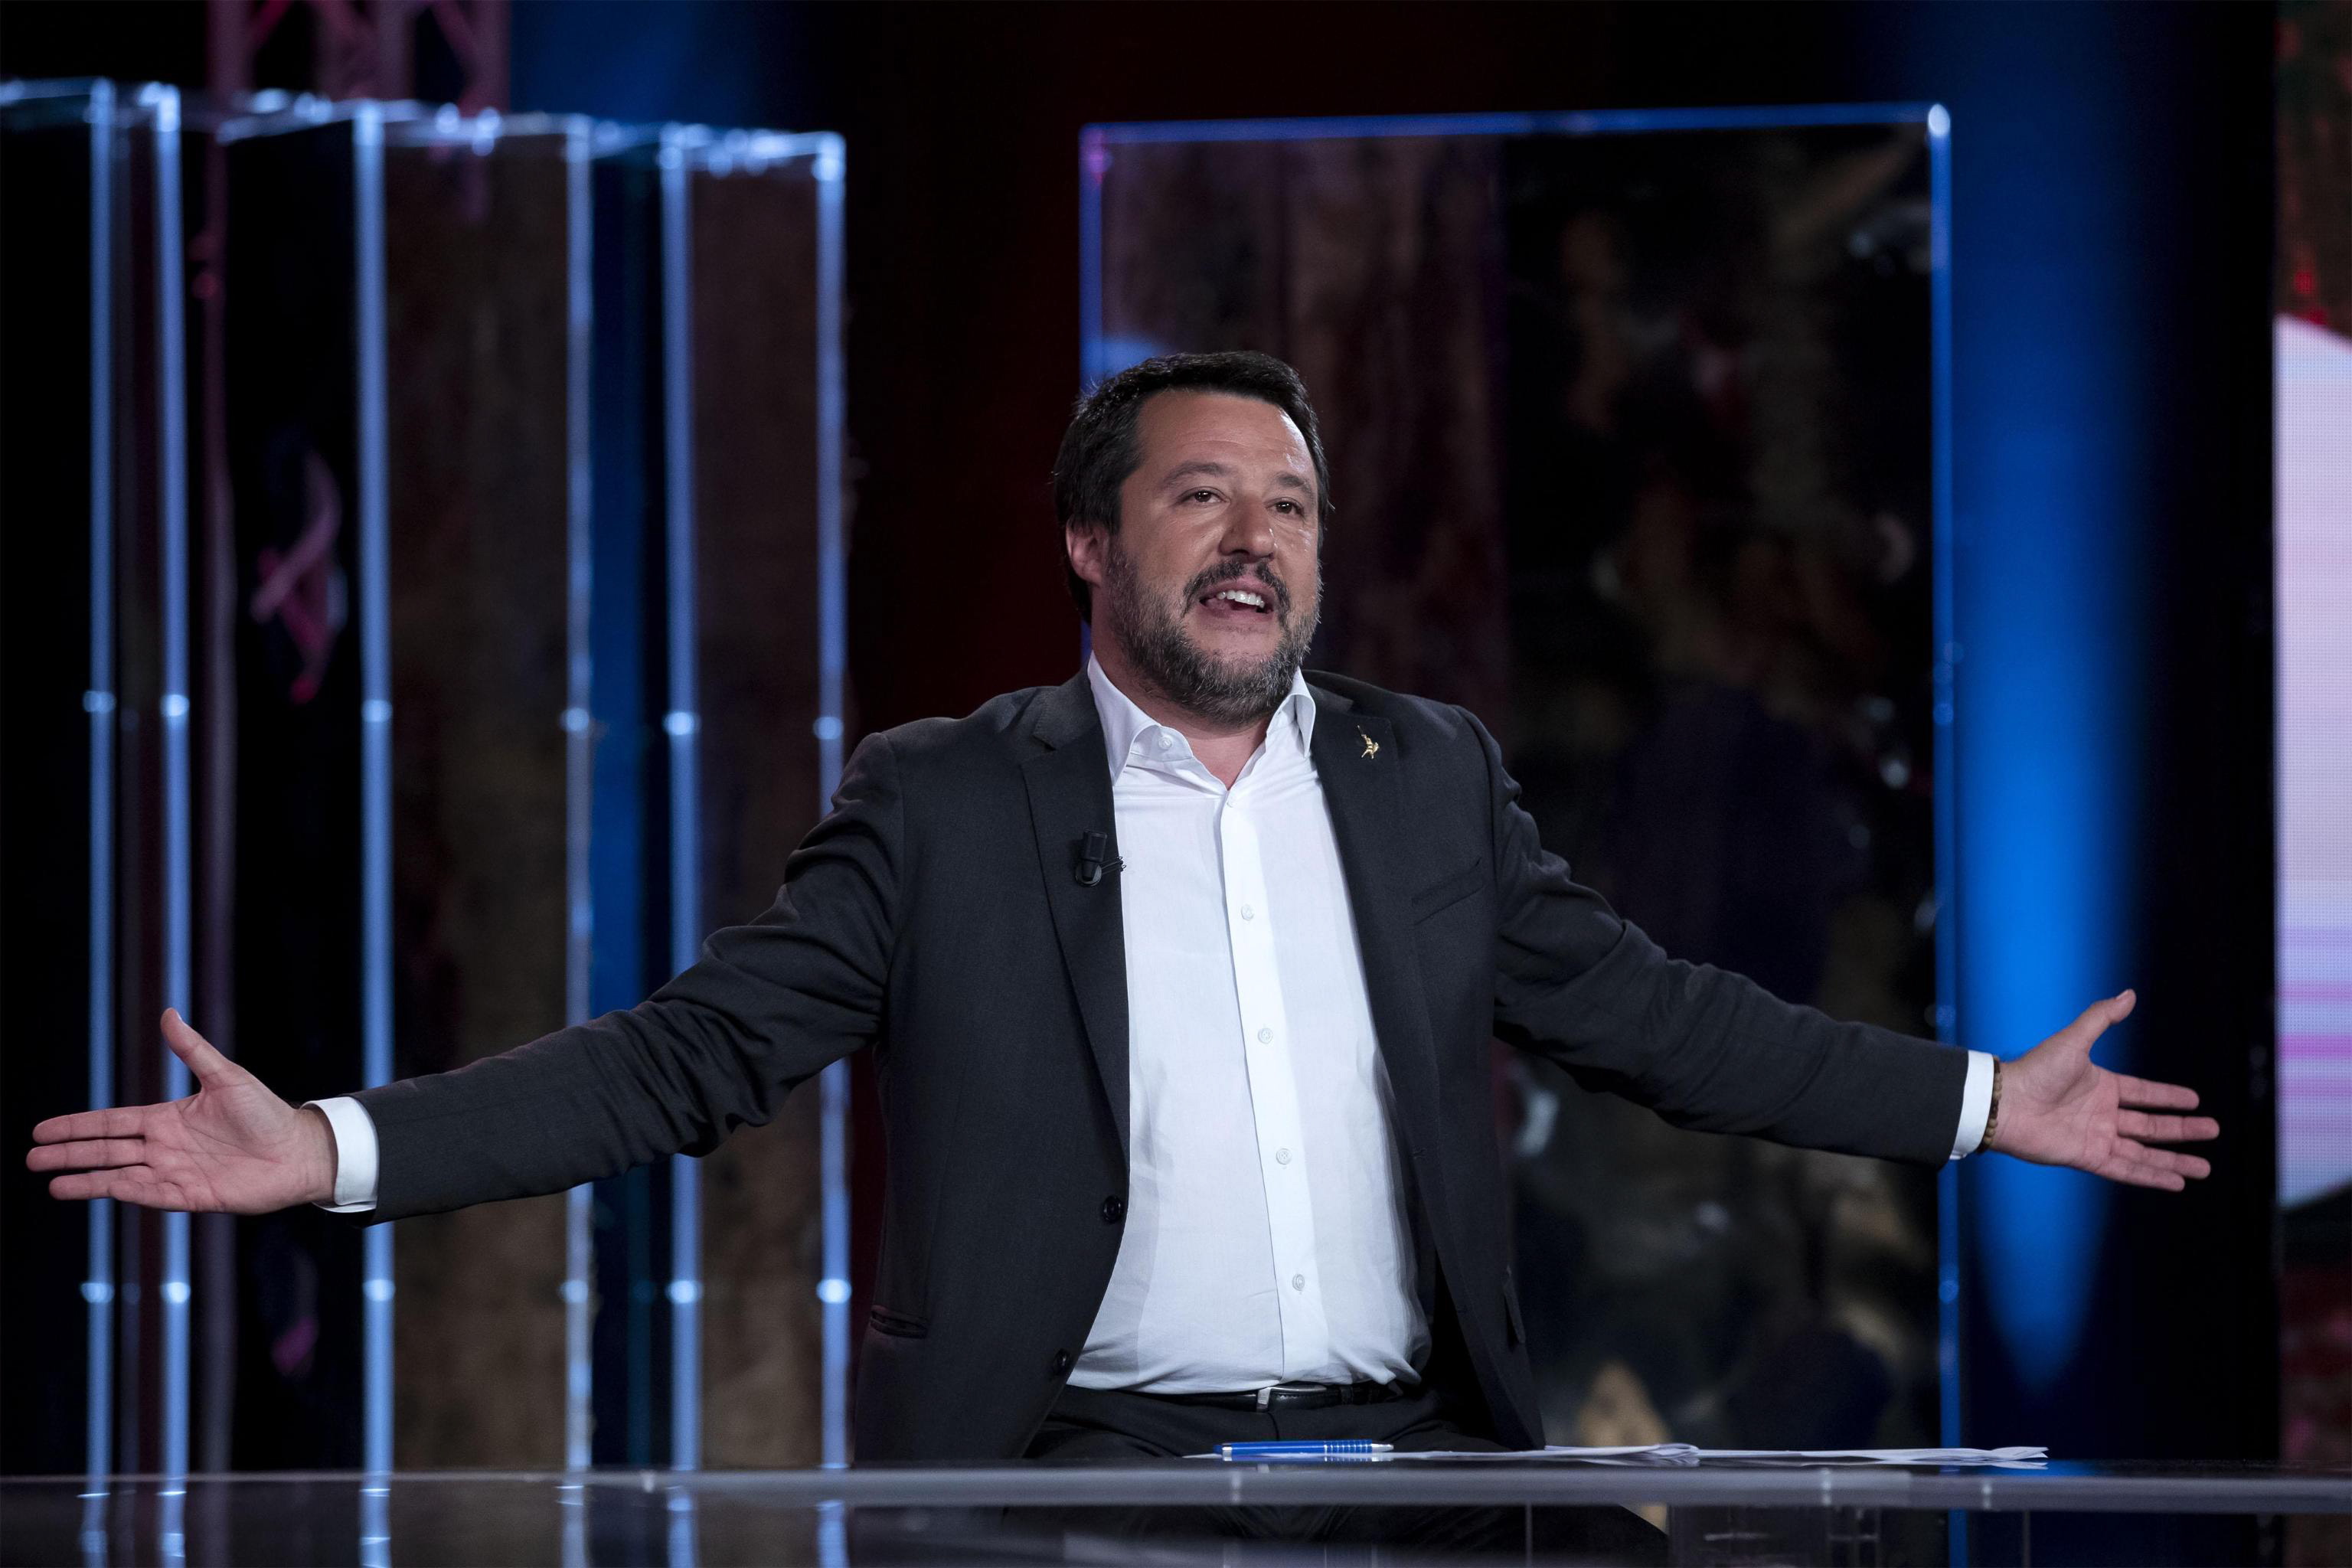 epa07537018 Italian Deputy Premier and Interior Minister, Matteo Salvini, attends the Raidue Italian program 'Povera Patria' in Rome, Italy, 29 April 2019.  EPA/MASSIMO PERCOSSI